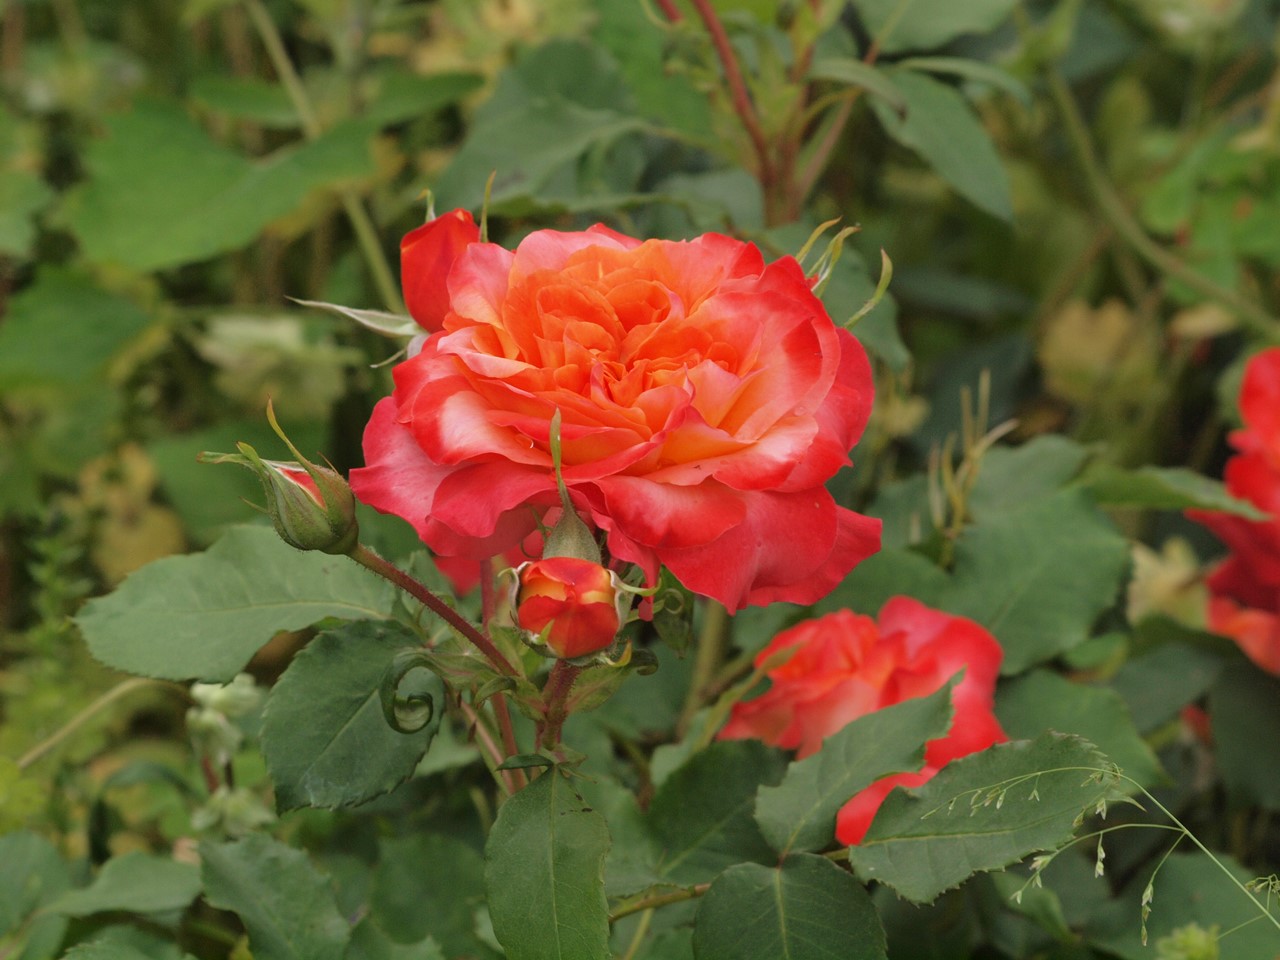 『神戸町ばら公園いこいの広場の薔薇風景』_d0054276_20104789.jpg